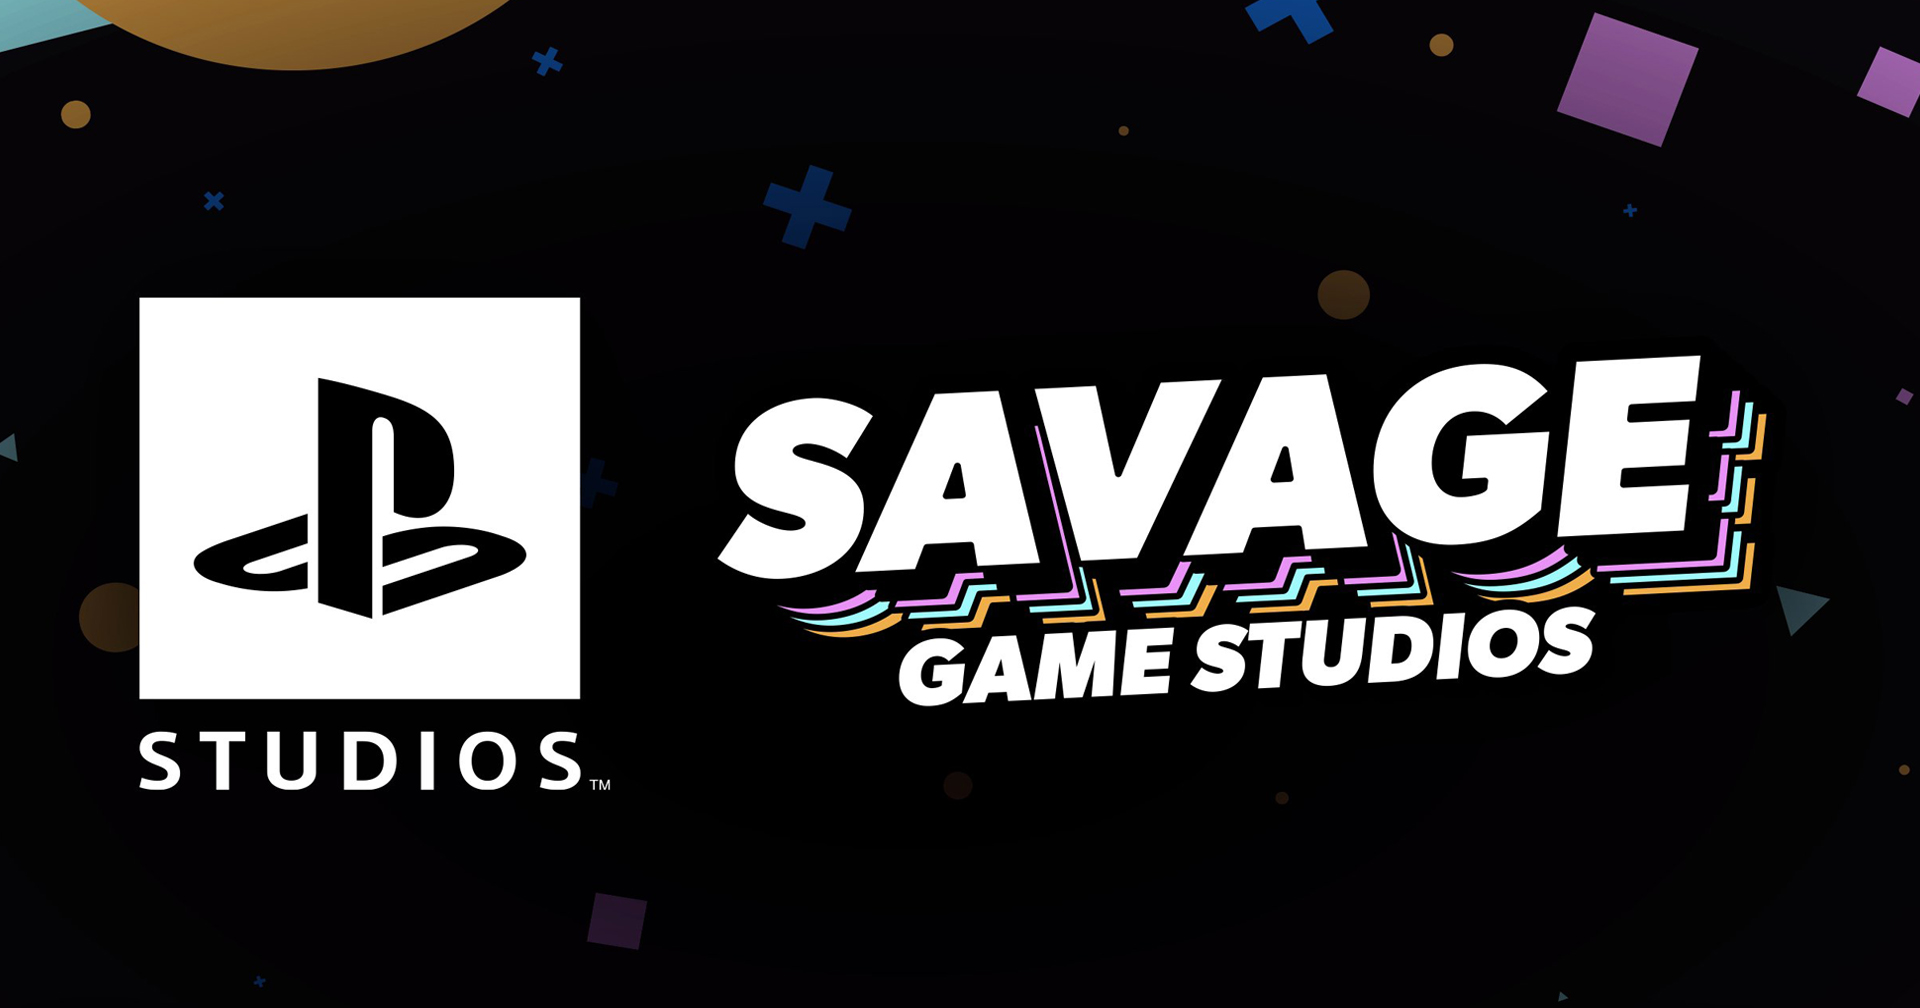 Sony เตรียมซื้อกิจการ Savage Game Studios เพื่อเสริมความแข็งแกร่งให้แก่การพัฒนาเกมบนมือถือ